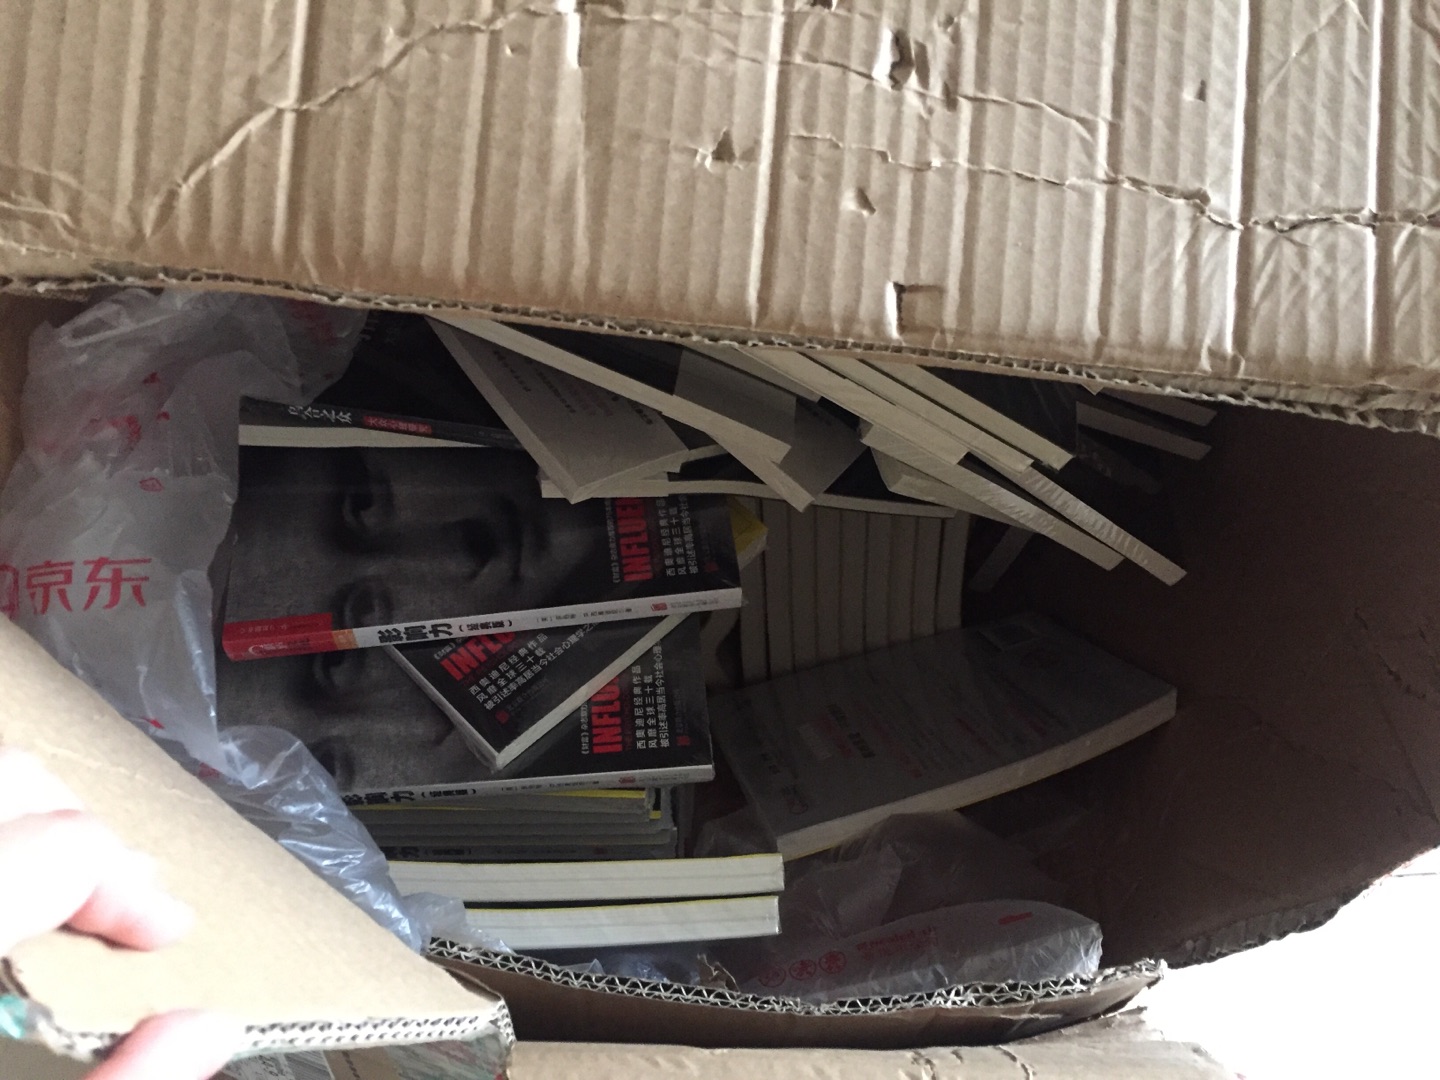 连续几周每周买几千块的书，第一次，送来了这样的包装，近两百本书杂乱的放在一个因为书籍太重，运输已经破损严重的箱子中，我不知道是箱子太贵还是真的太水太不用心，及其失望！！！！